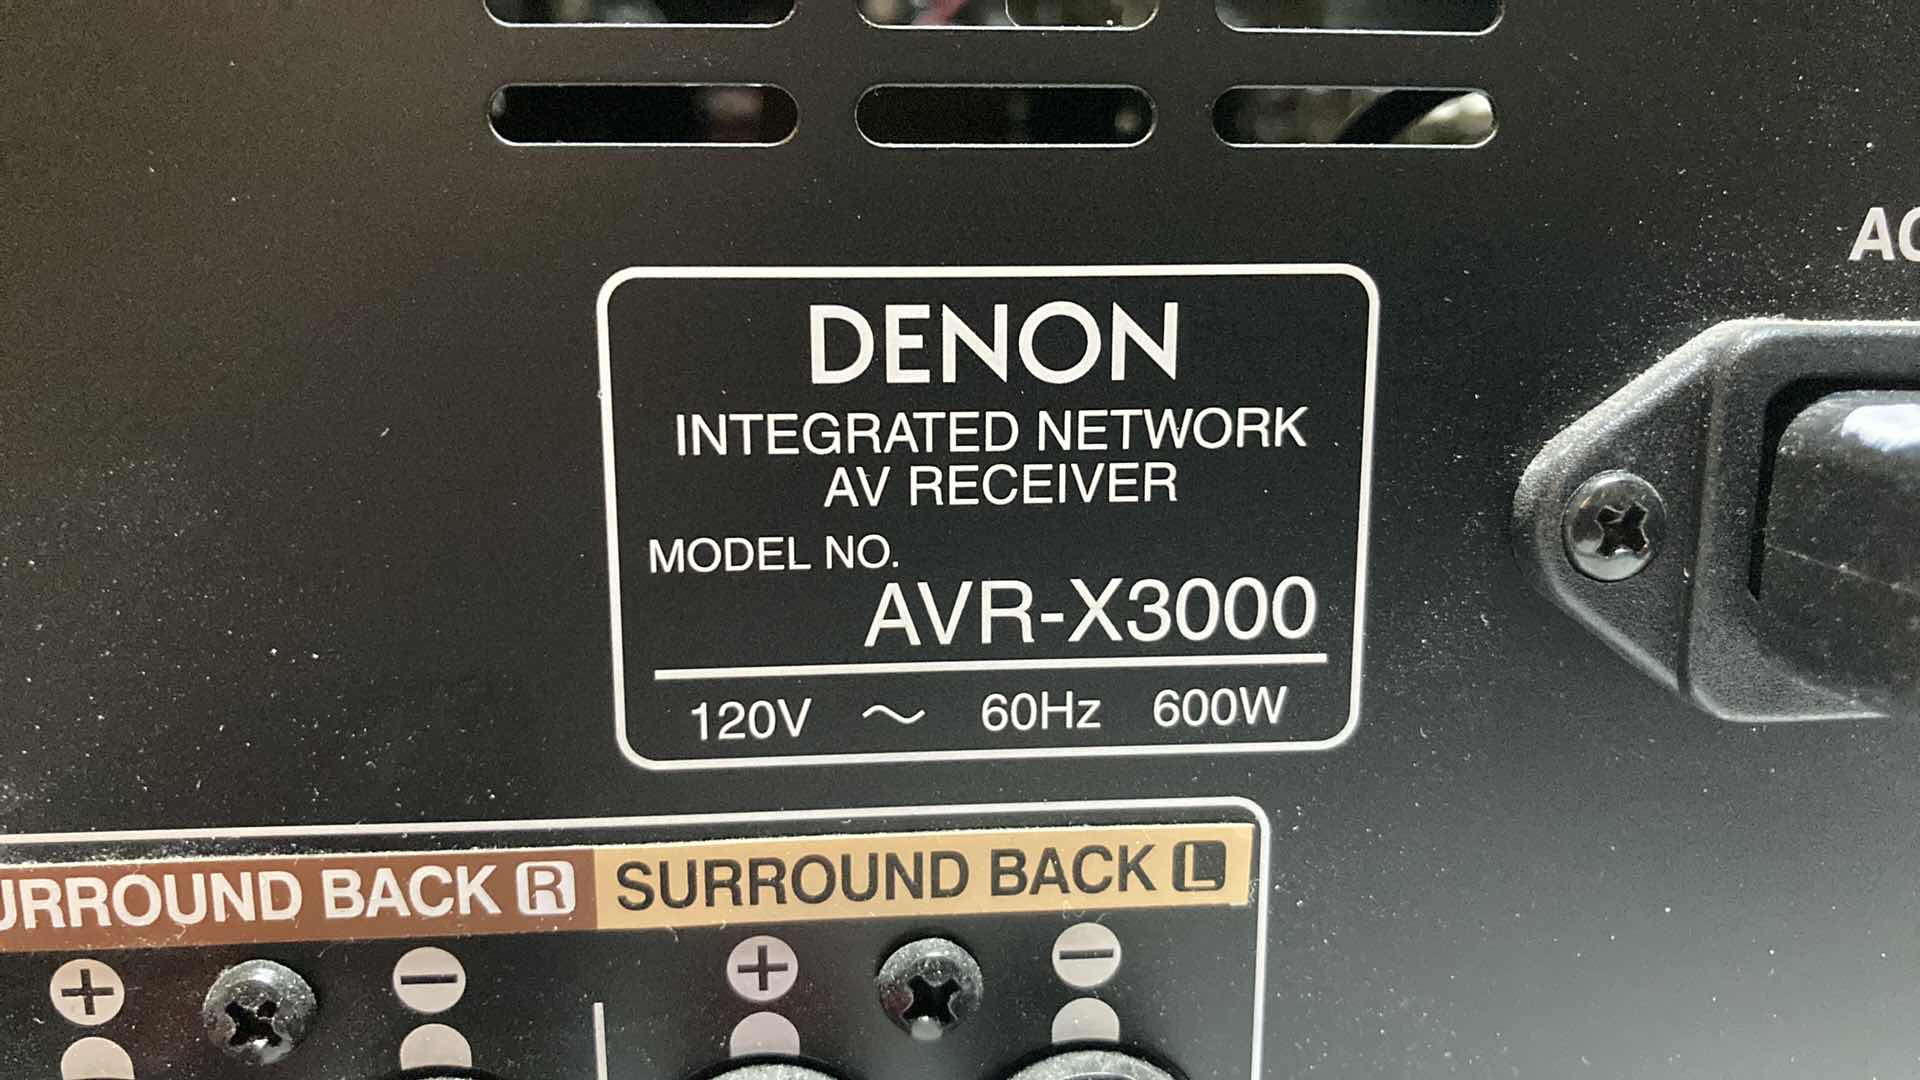 Photo 4 of DENON INTEGRATED NETWORK AV RECEIVER MODEL AVR-X3000